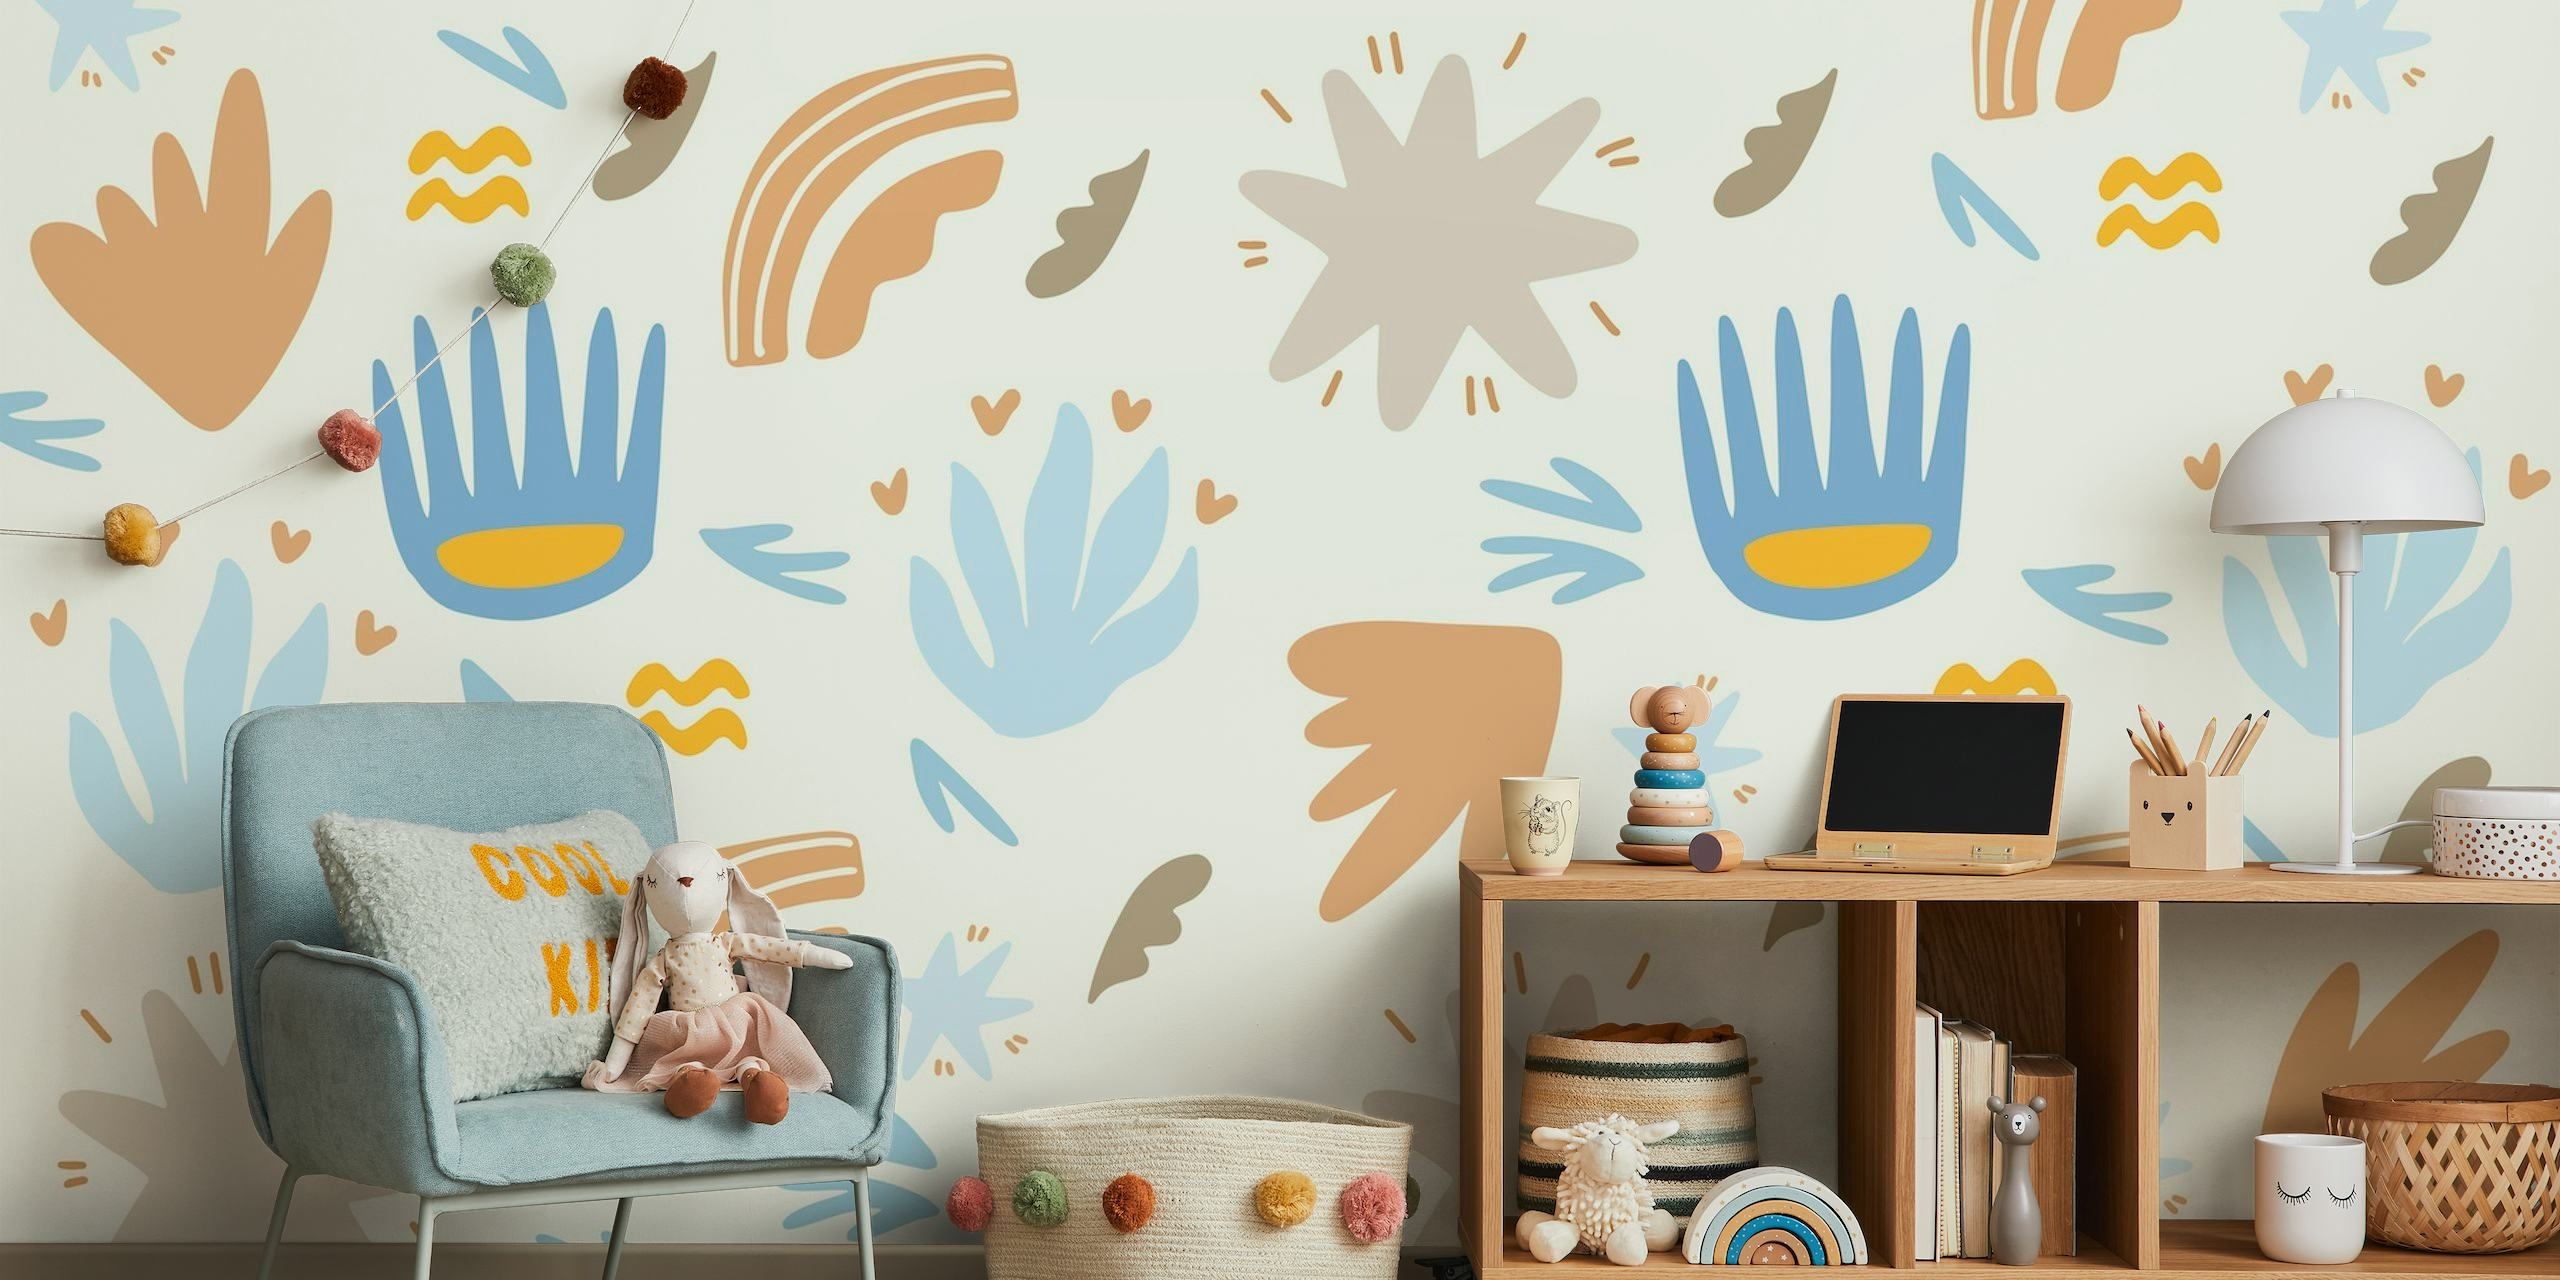 Sommer-Wandbild für Kinder mit abstrakten Formen und skurrilen Motiven in Blau, Ocker und Terrakotta